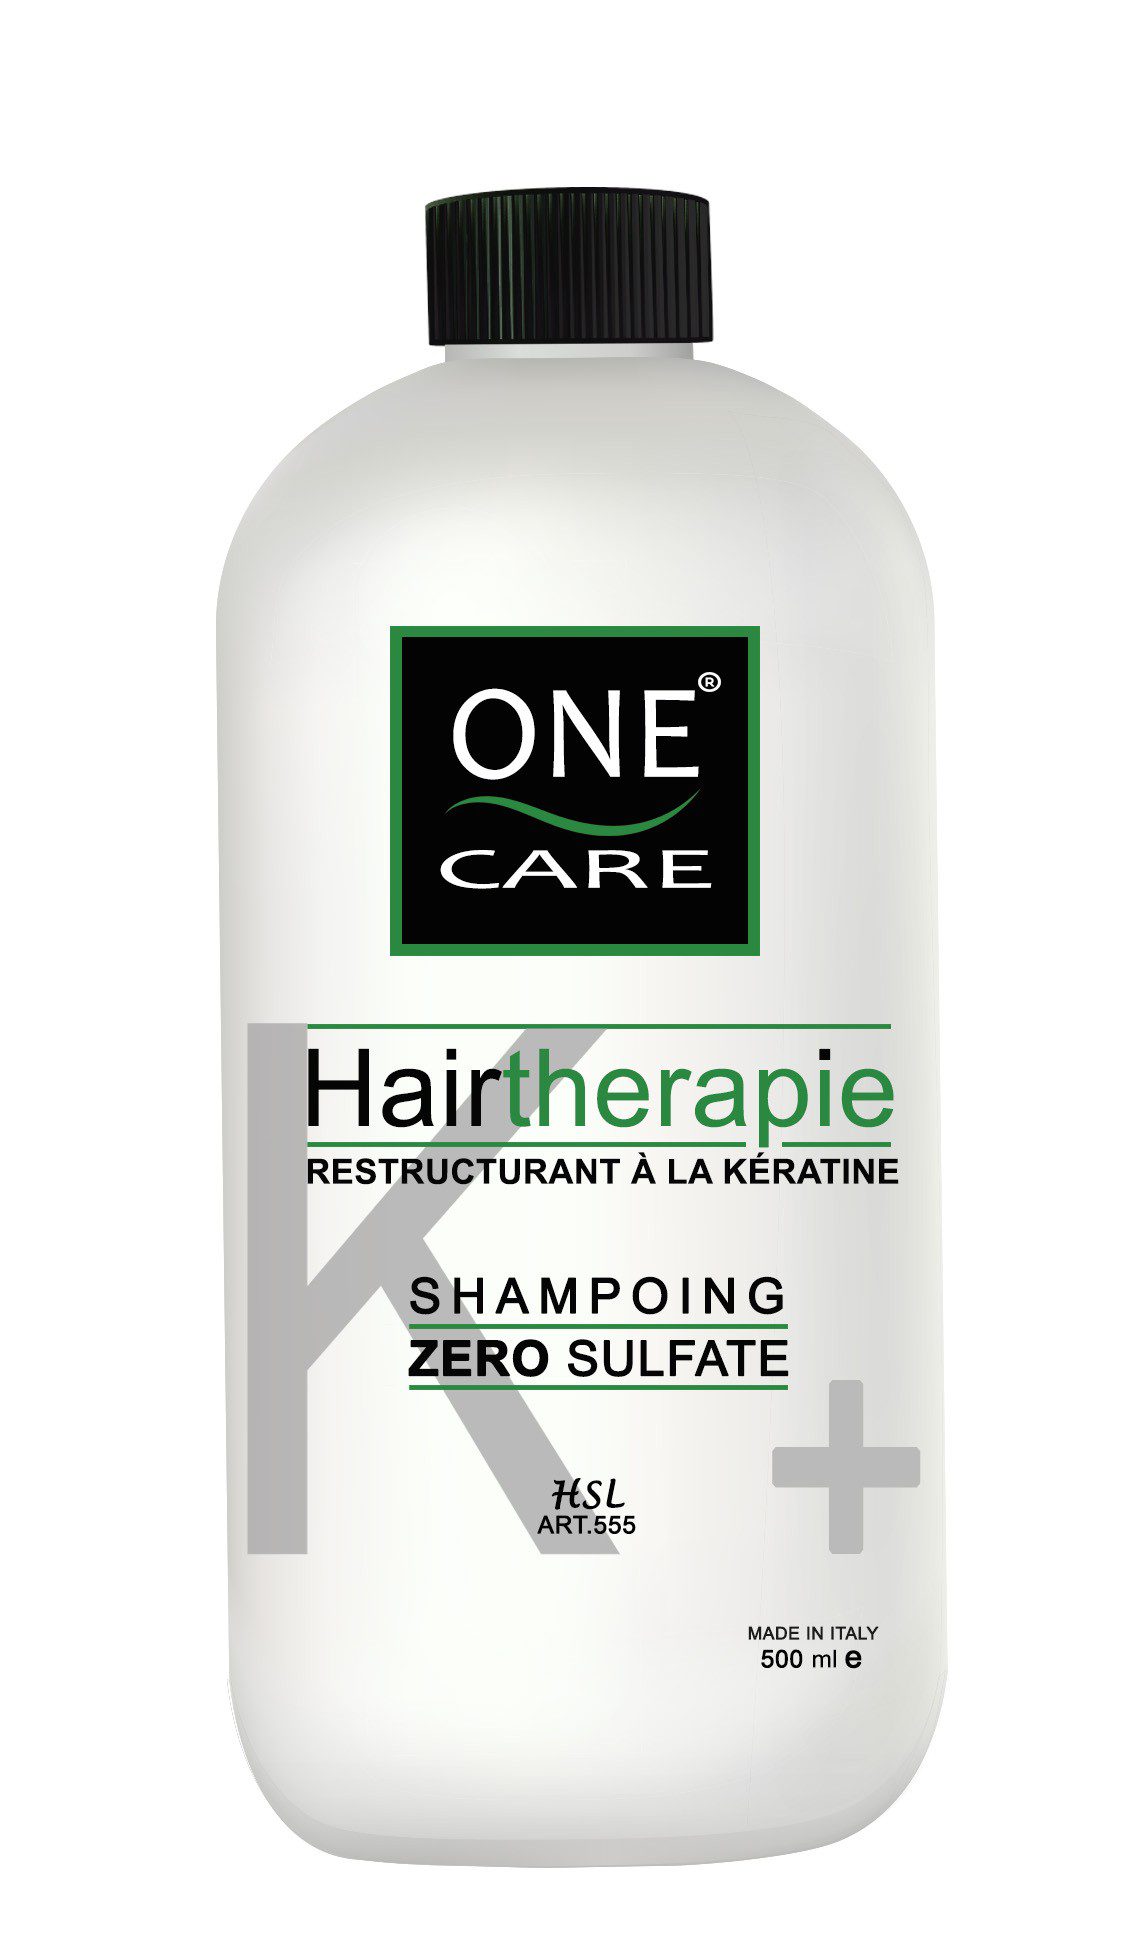 Shampoing Hair thérapie Restructurant à la kératine Sans Sulfate - One Care 500ml